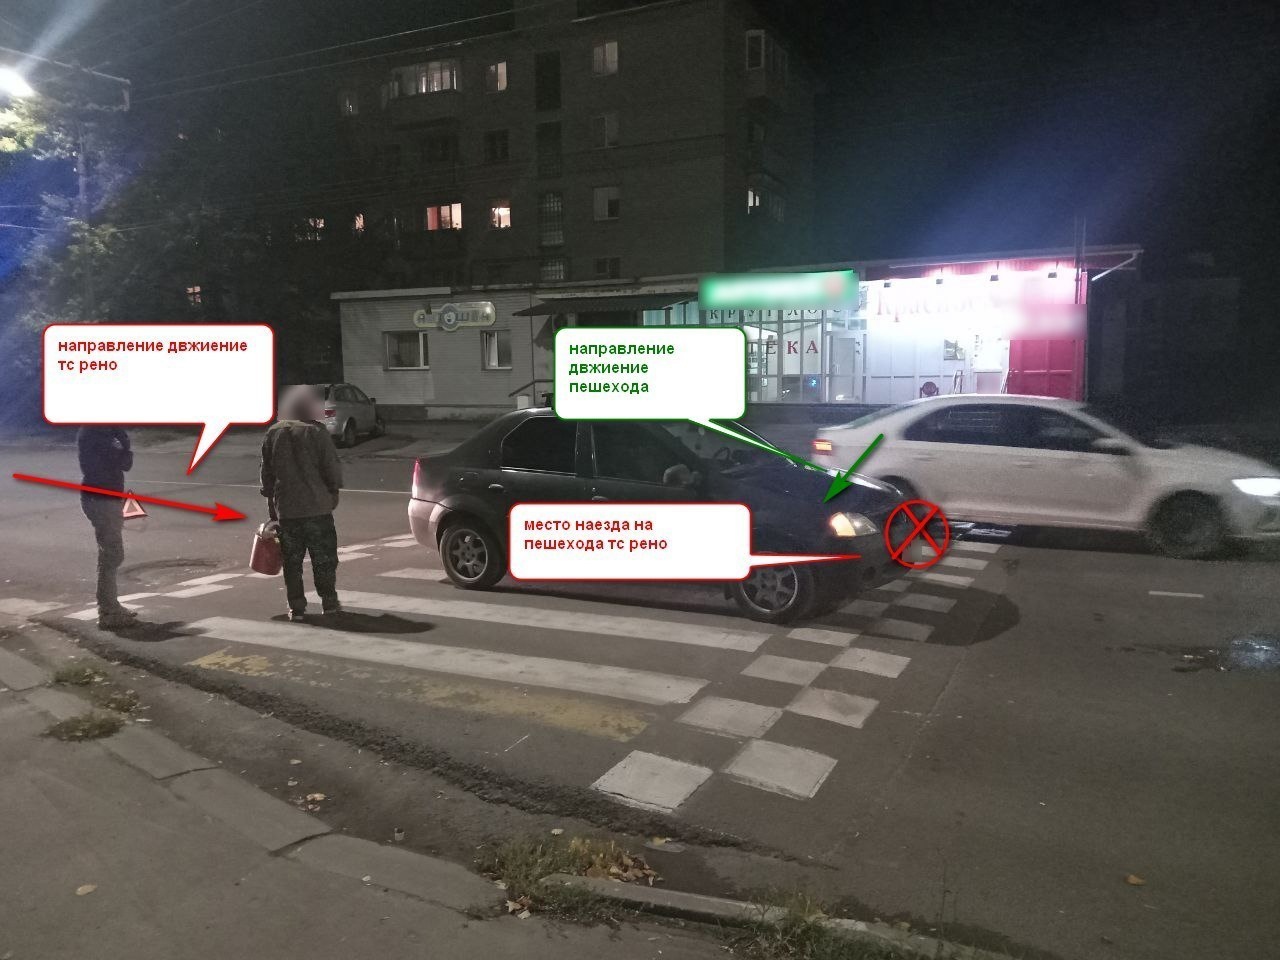 Пенсионерок сбили на пешеходном переходе в Костроме